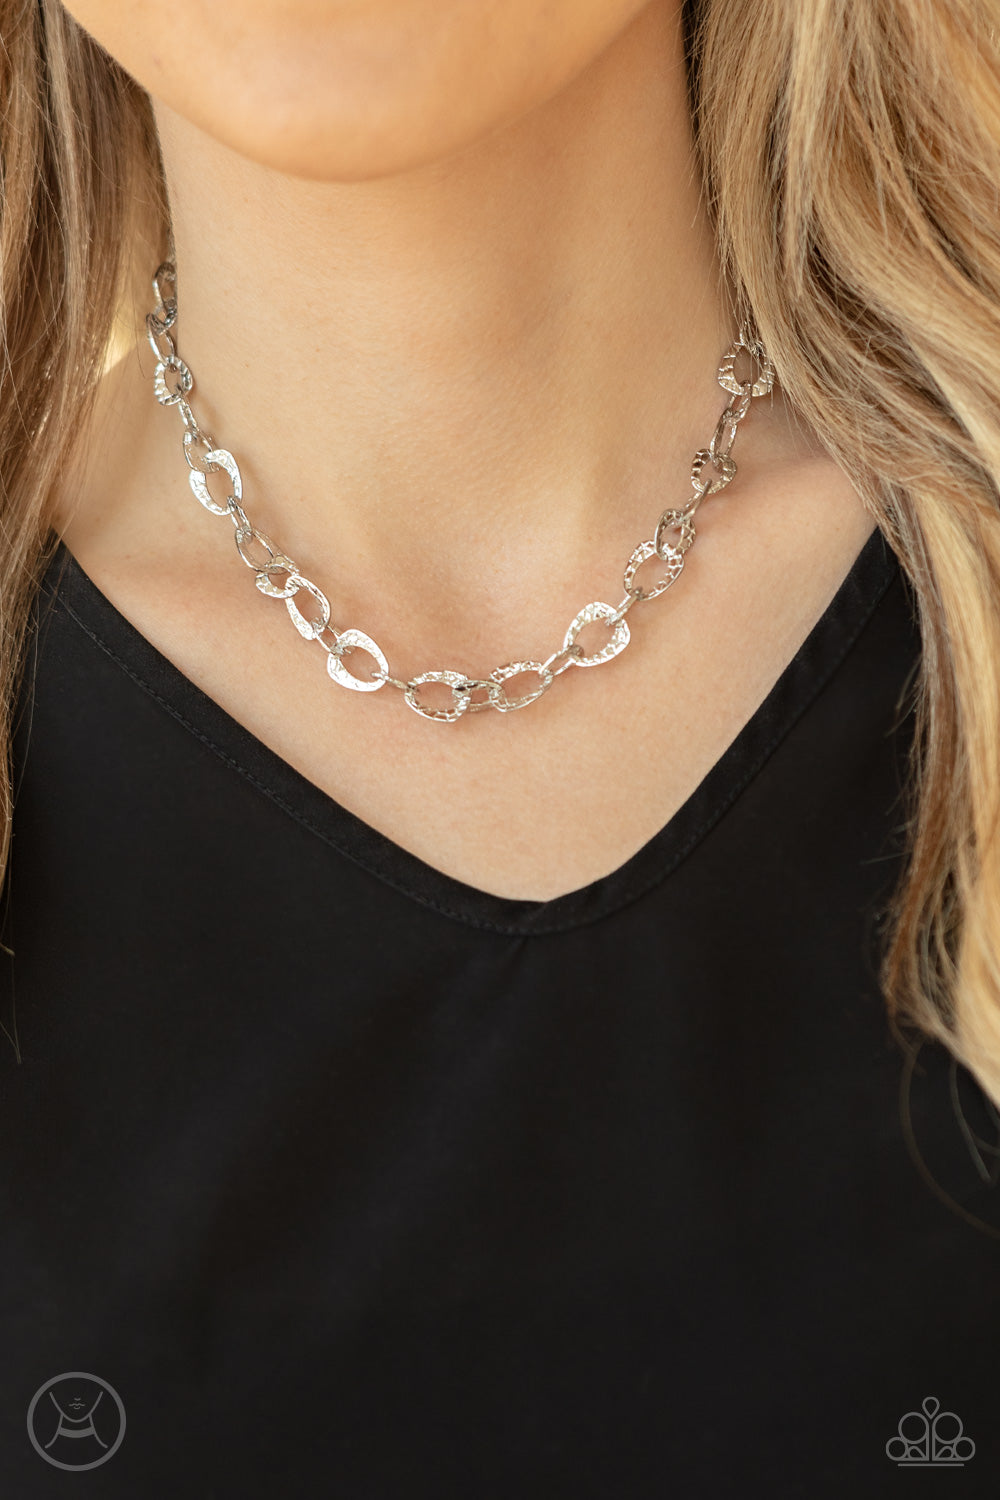 Paparazzi Urban Safari - Silver Necklace Choker - A Finishing Touch Jewelry